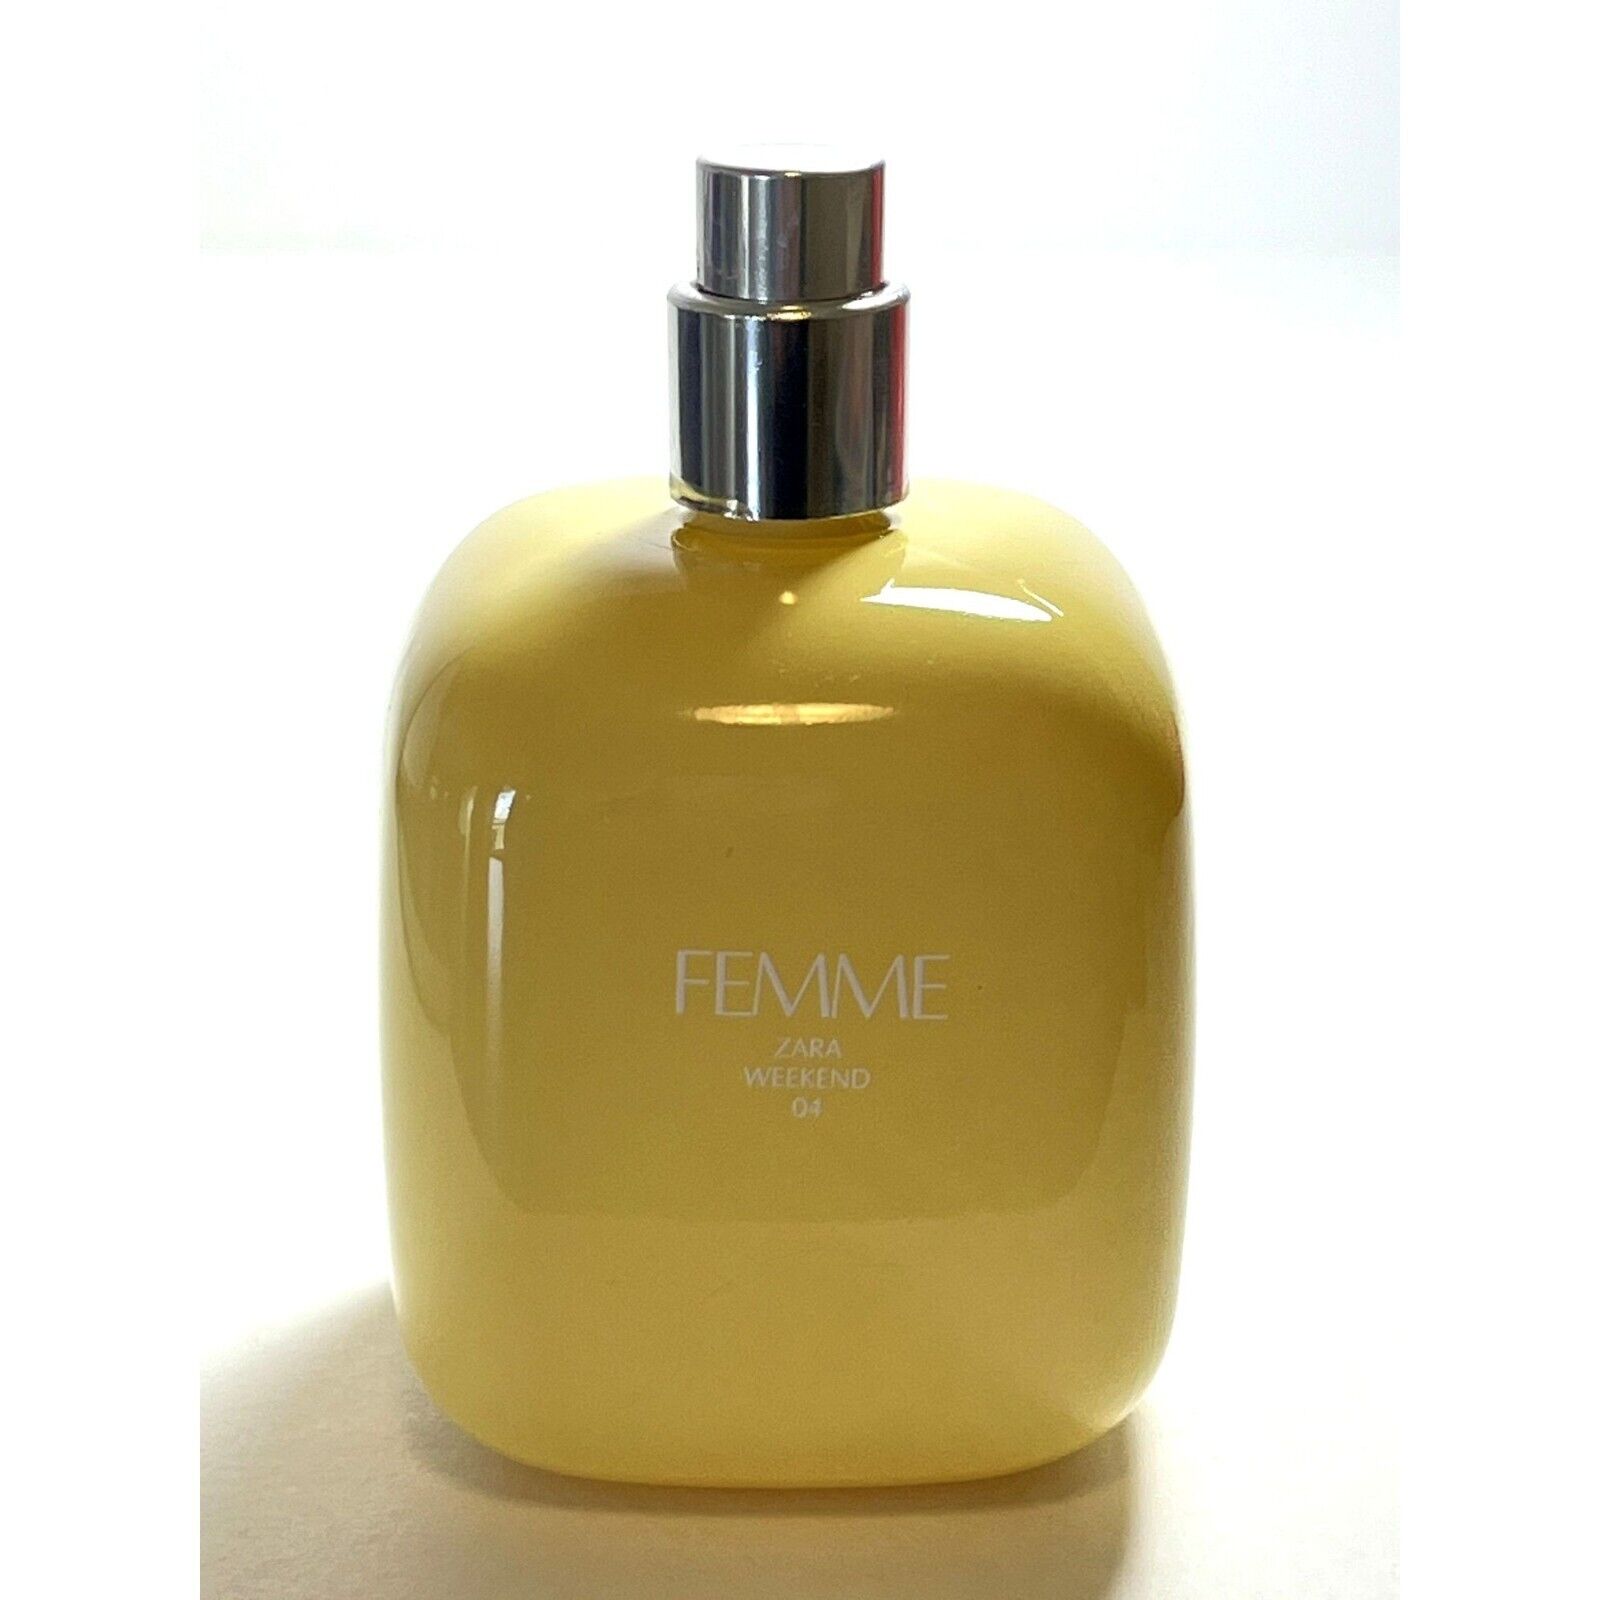 ZARA Femme Weekend Eau De Toilette Perfume 80% Full 3oz READ